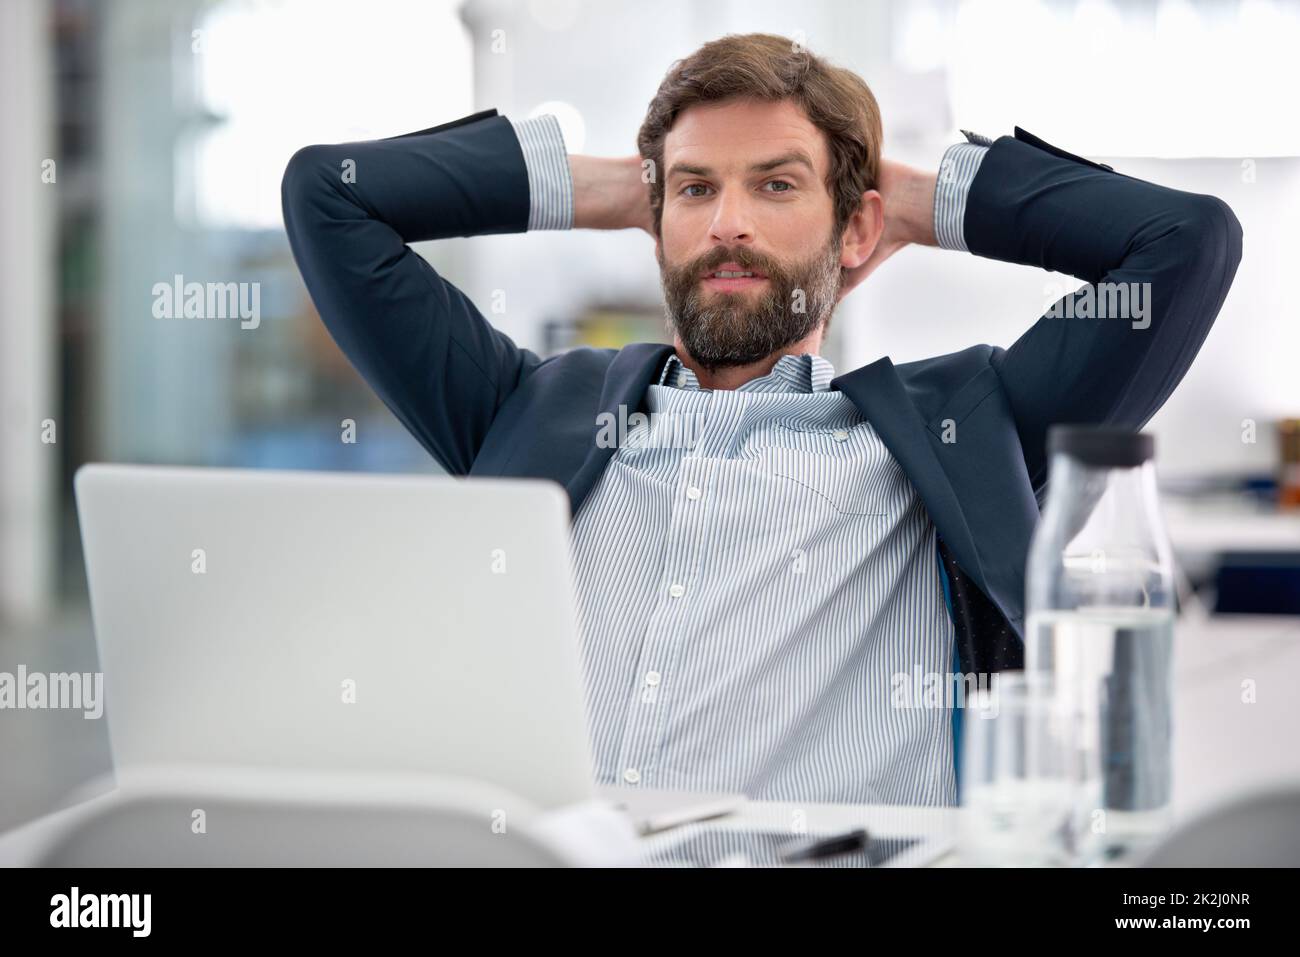 Il prend son travail très au sérieux.Photo d'un jeune homme d'affaires assis à son poste de travail dans un bureau. Banque D'Images